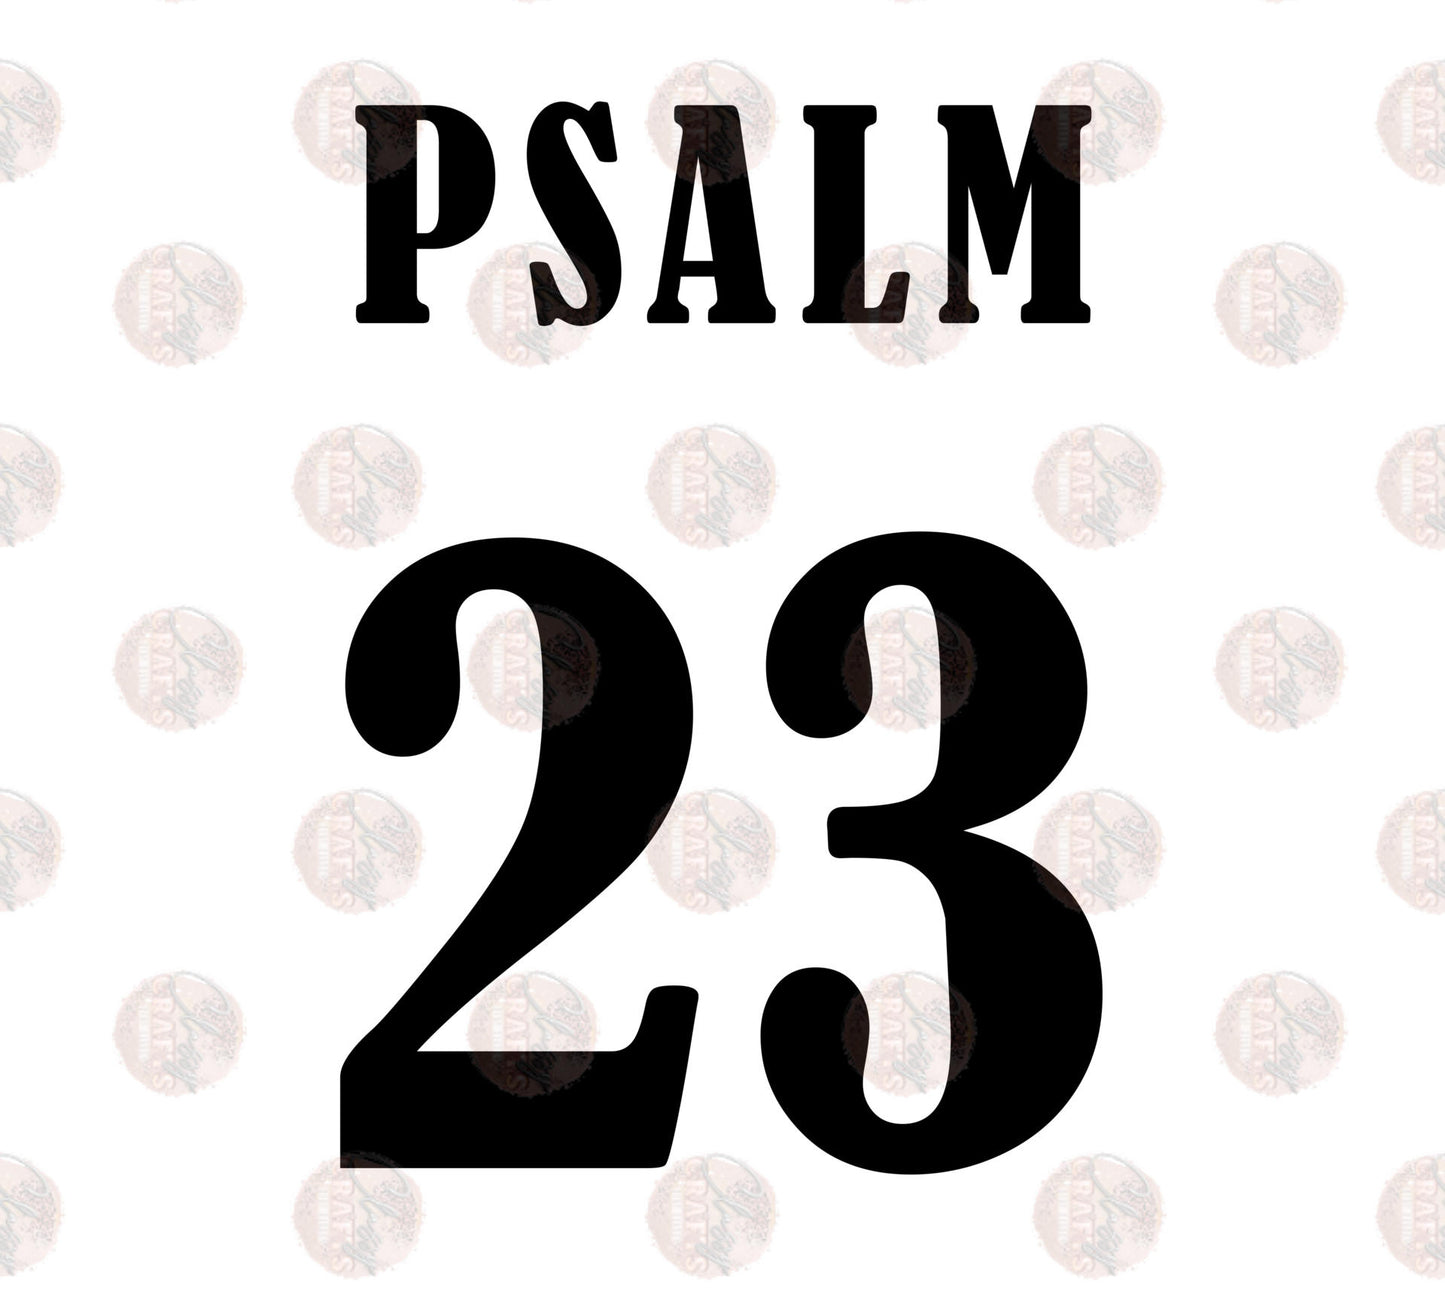 Psalms 23 Jersey Style Transfer